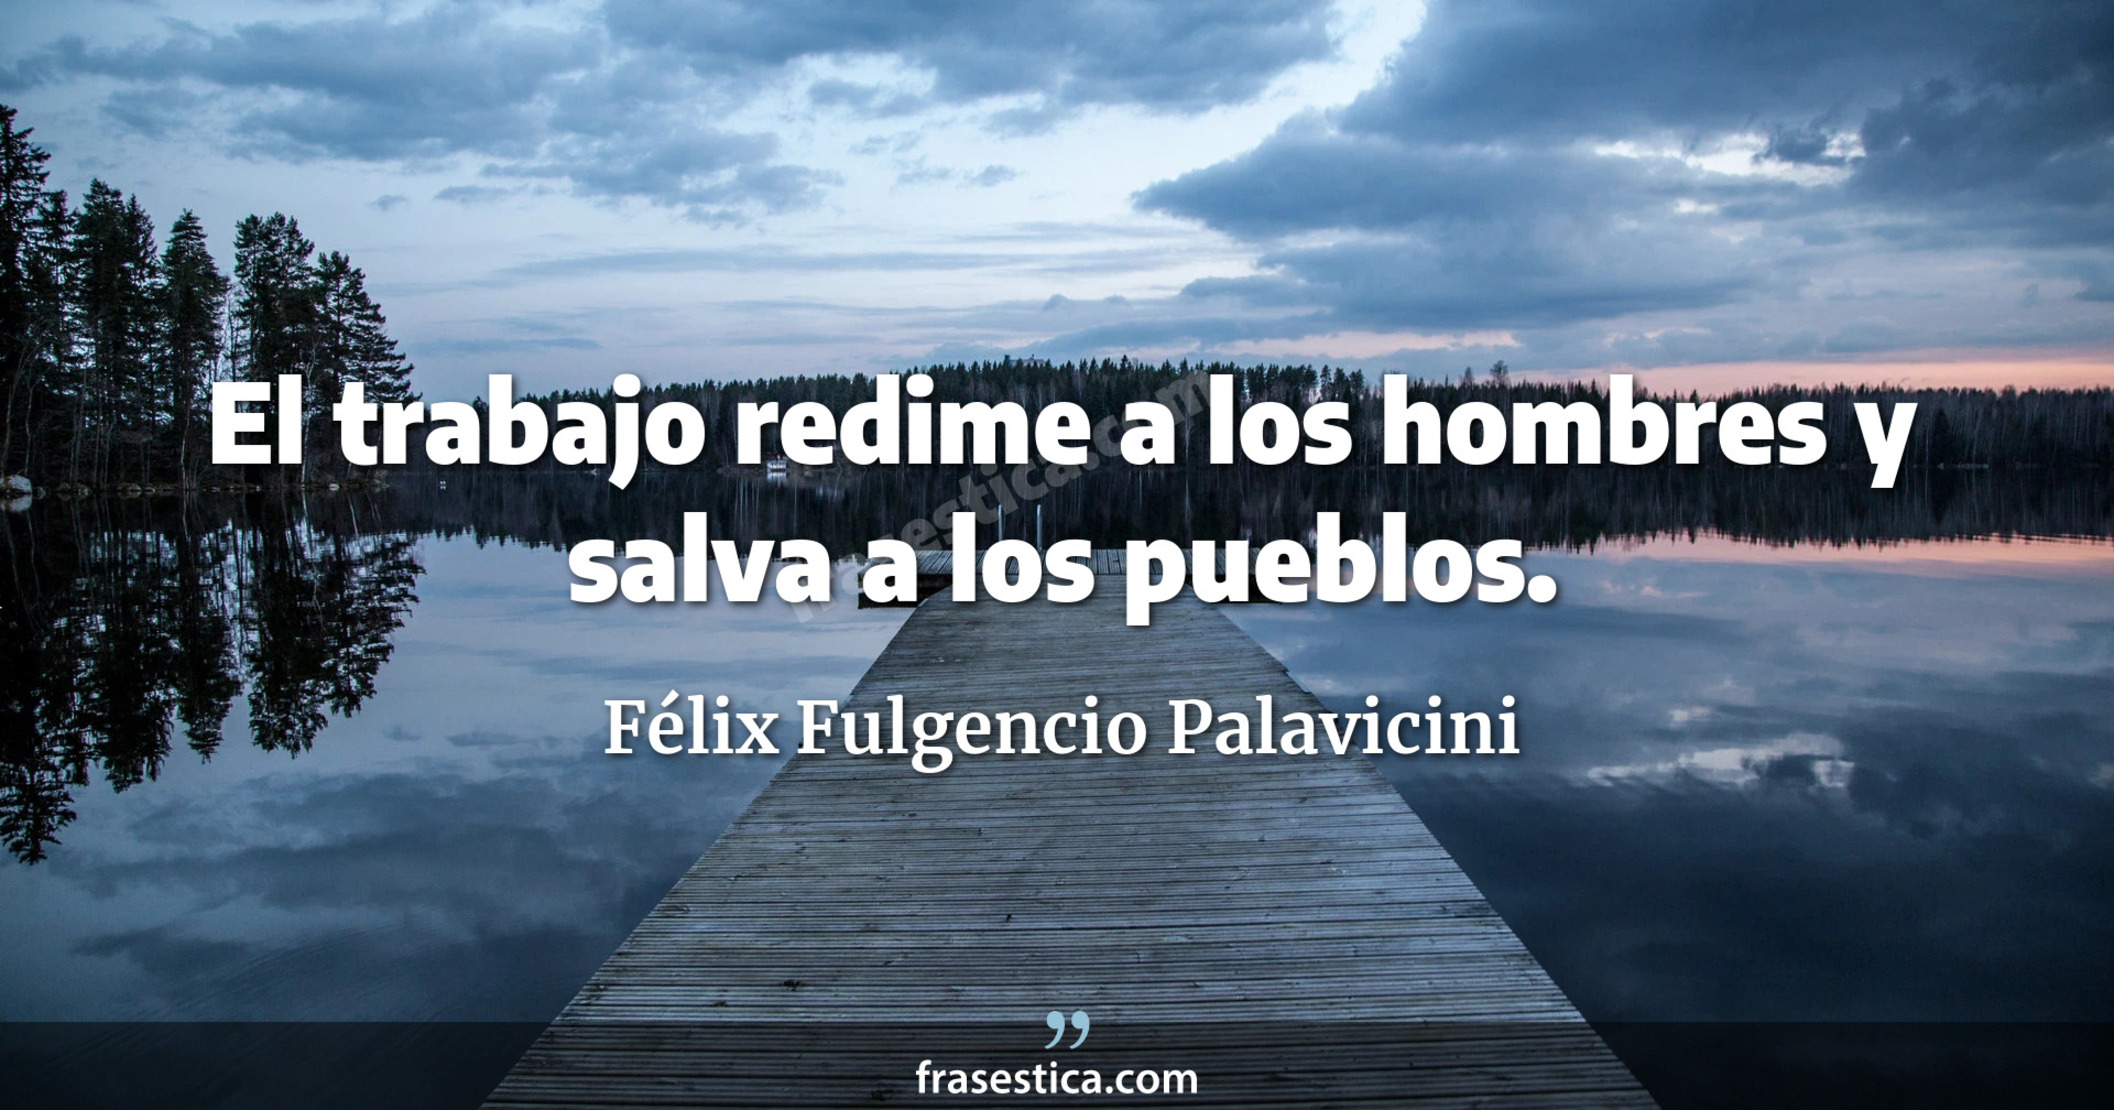 El trabajo redime a los hombres y salva a los pueblos. - Félix Fulgencio Palavicini